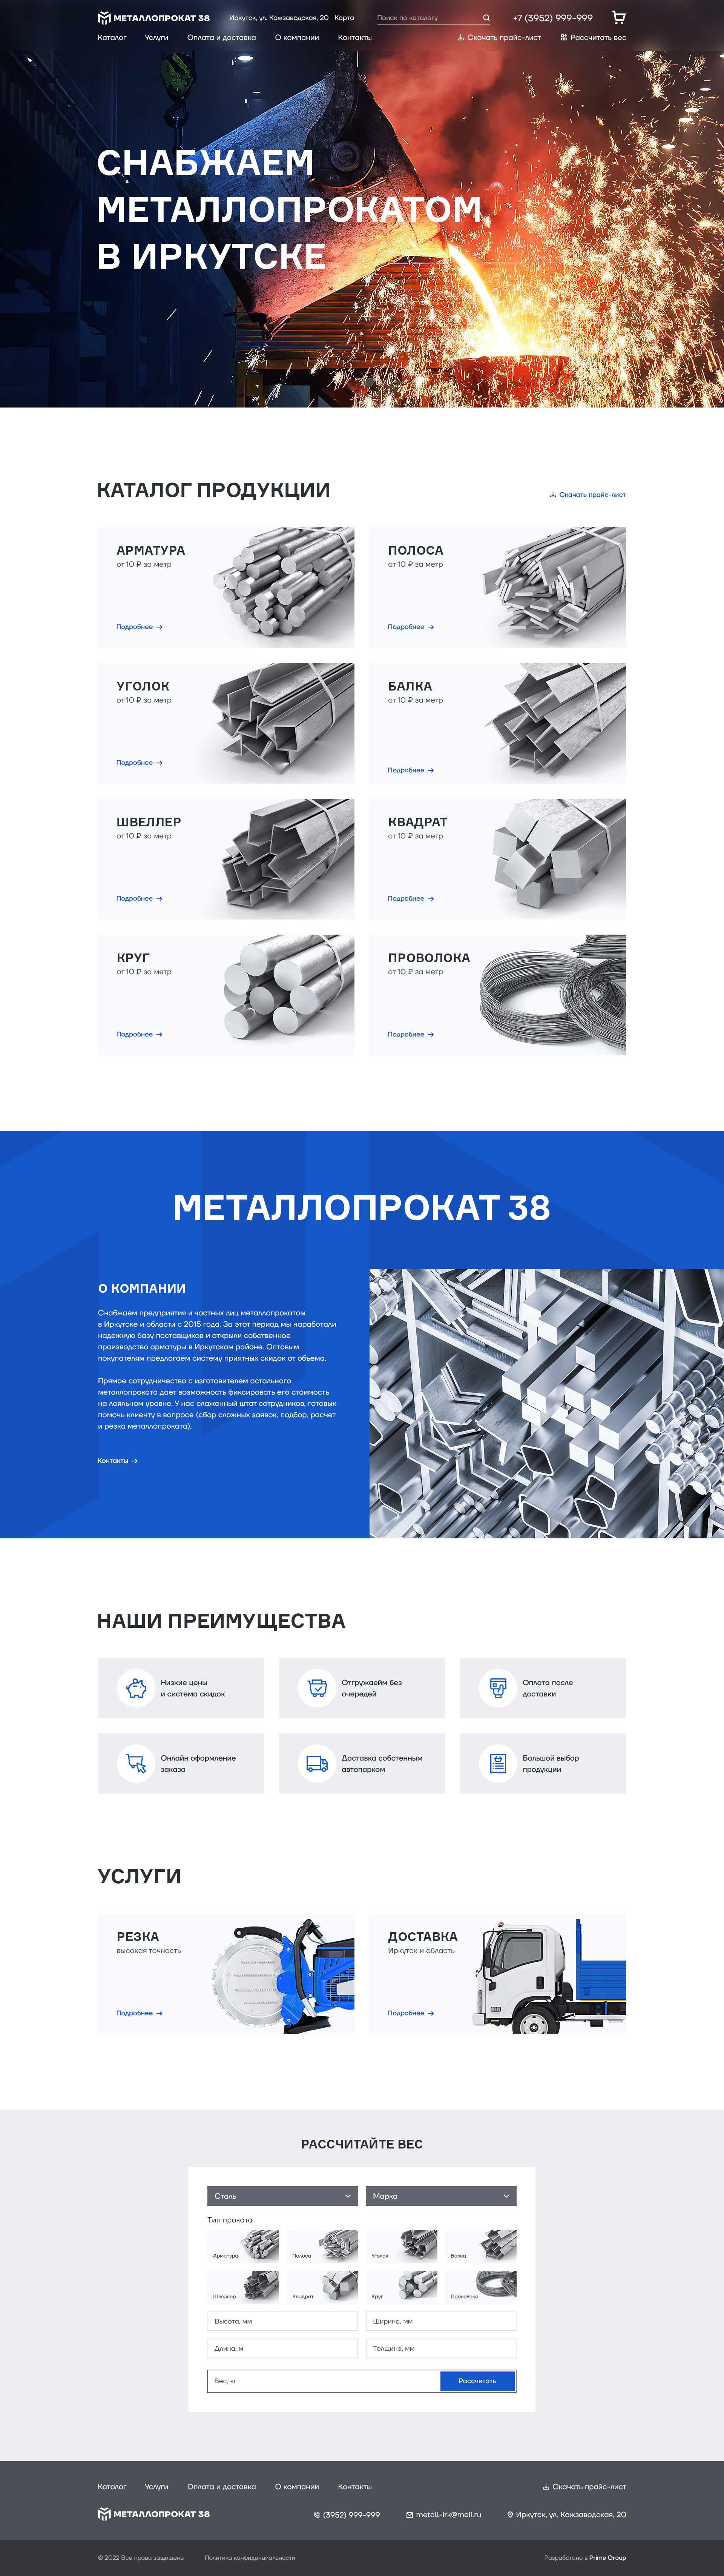 metalloprokat38.ru